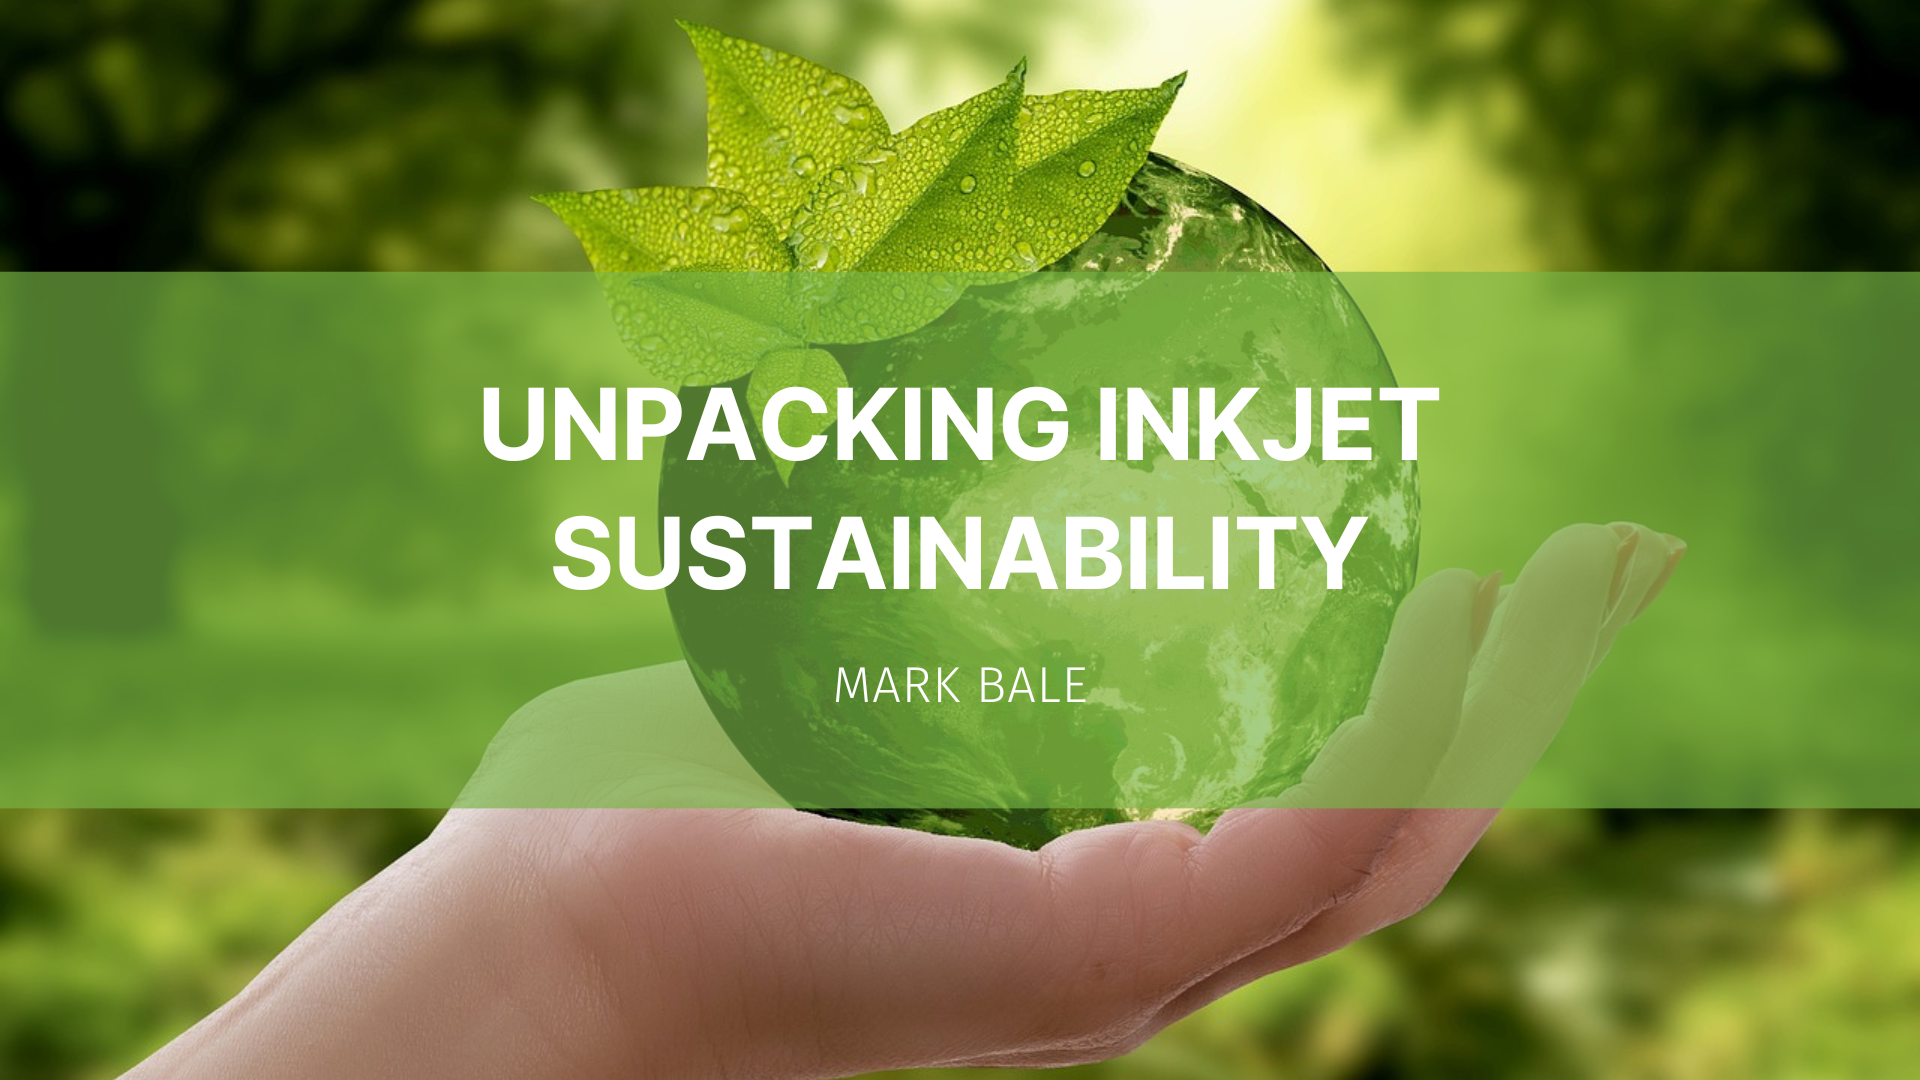 Featured image for “Unpacking Inkjet Sustainability”